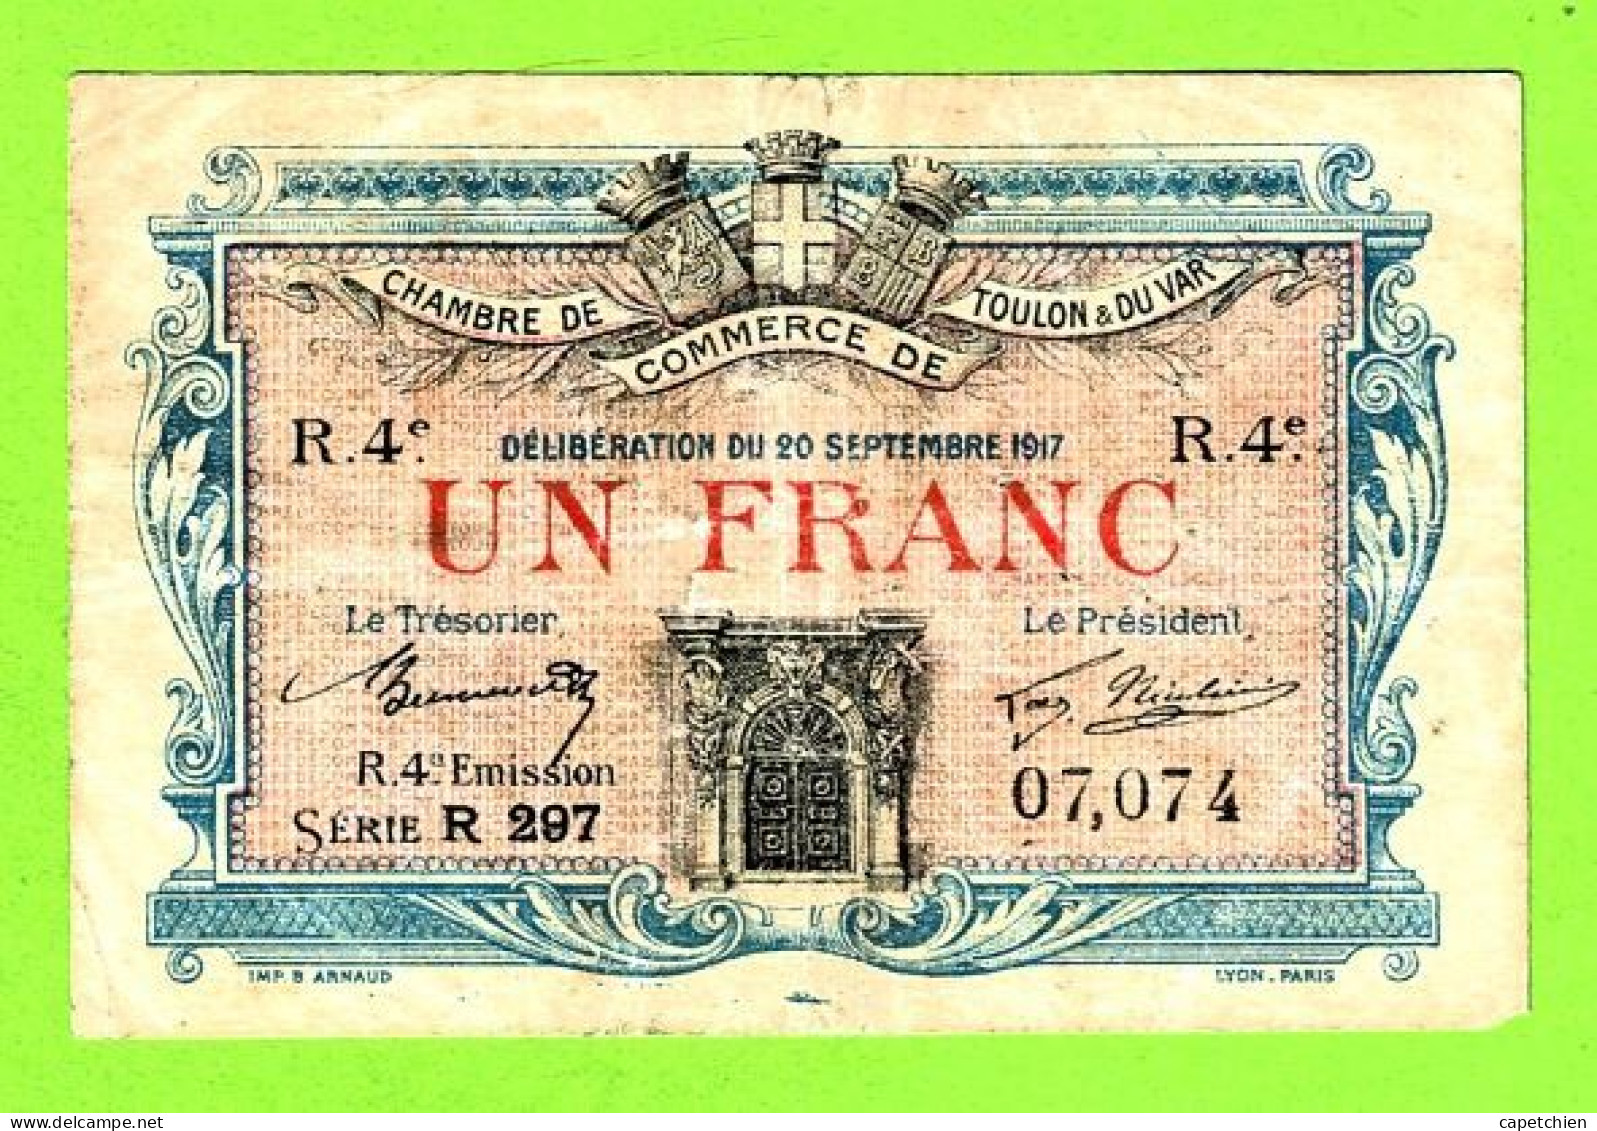 FRANCE/ CHAMBRE De COMMERCE De TOULON Et Du VAR / 1 FRANC/ 20 SEPTEMBRE 1917 / 07,074 / 4 Eme SERIE R 297 - Camera Di Commercio